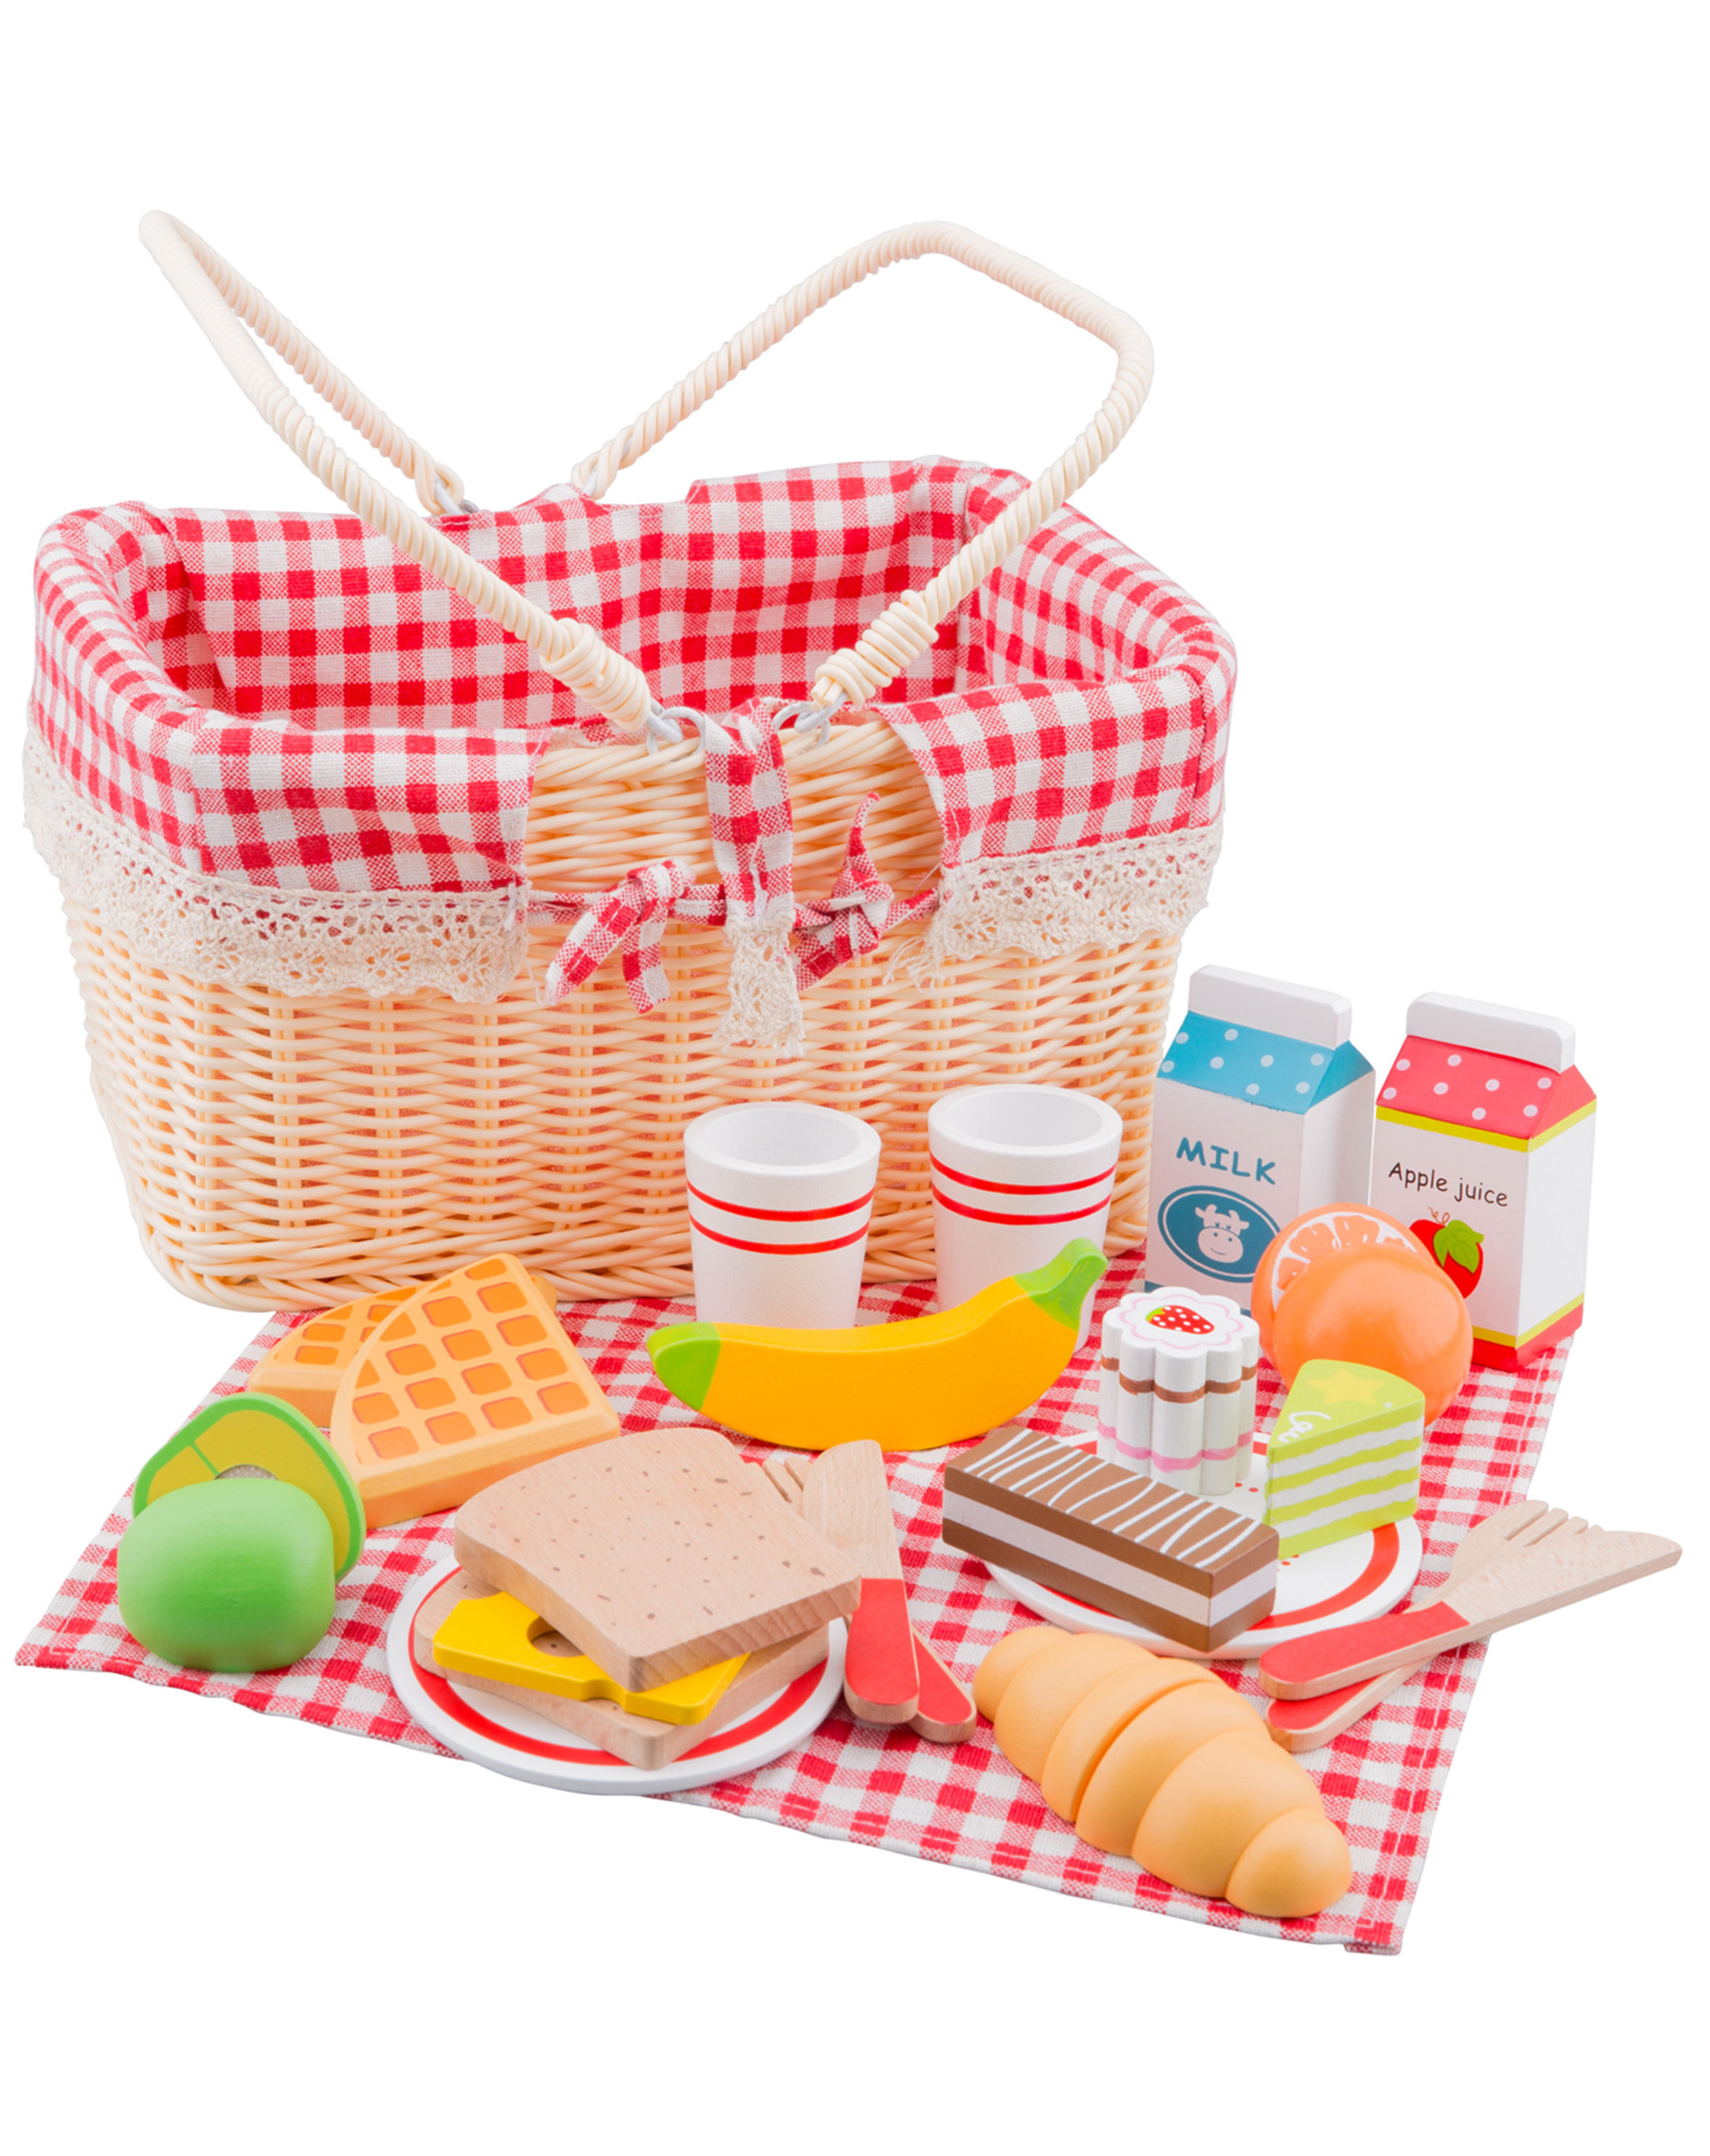 Picknickkorb mit Zubehör aus Holz kaufen | tausendkind.de